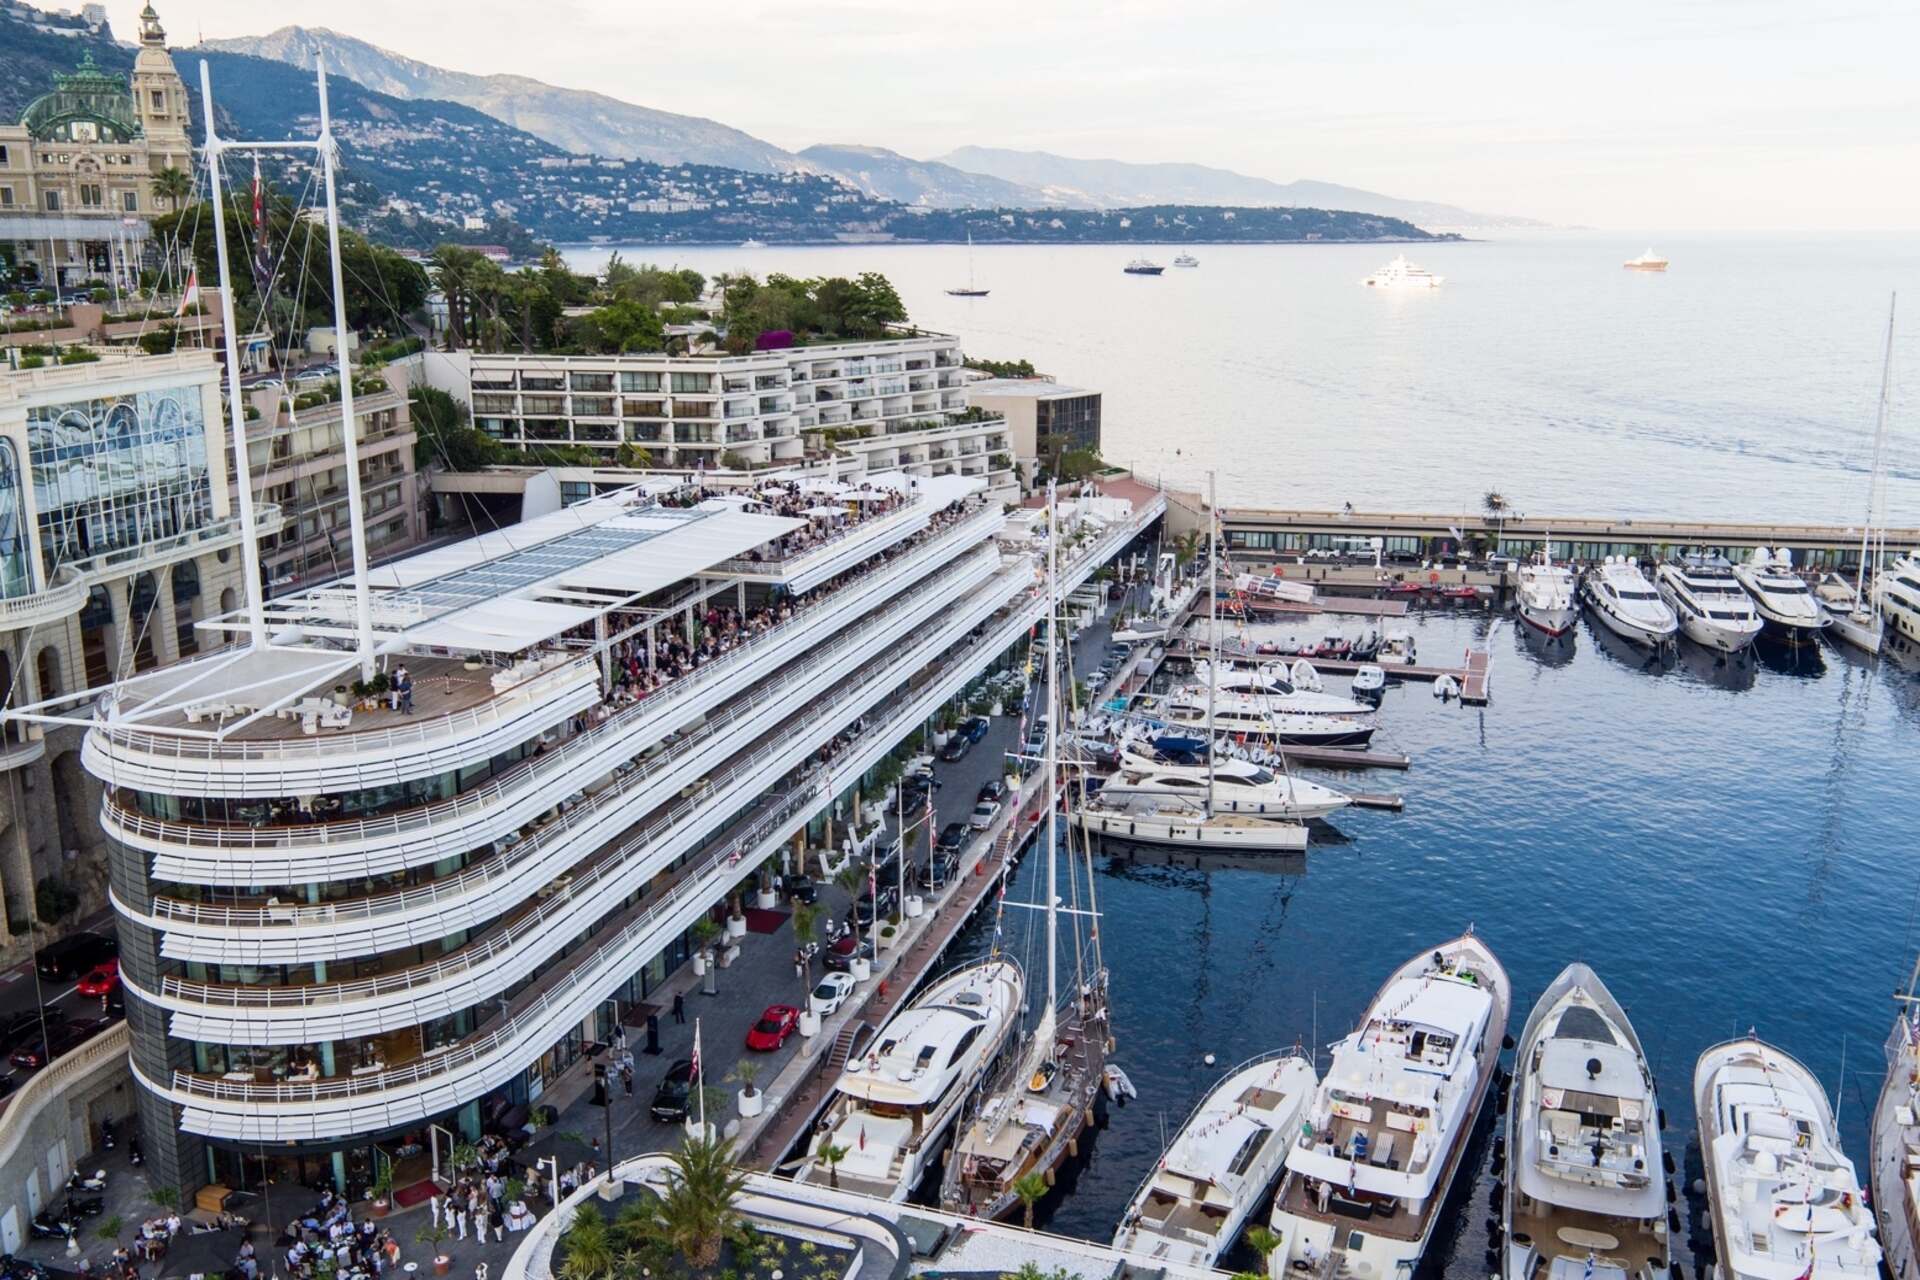 Naložbeni forum Monaco et Suisse je namenjen podjetjem in strokovnjakom v nepremičninskem sektorju